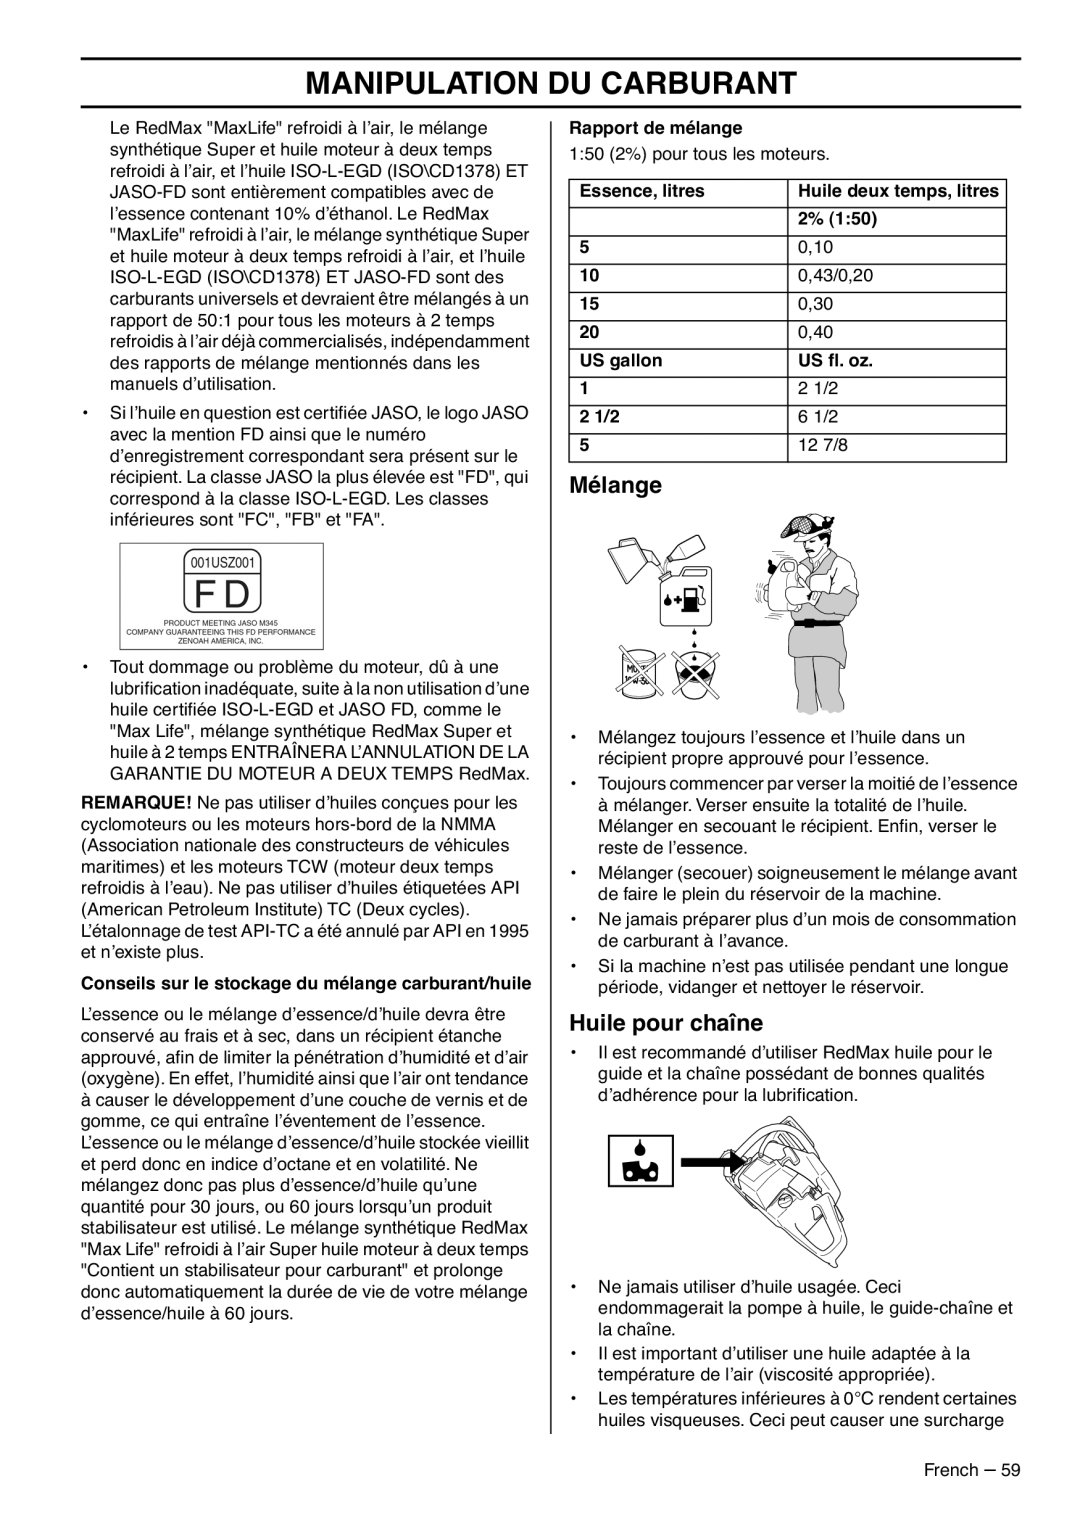 RedMax G5300 manual Mélange, Huile pour chaîne, Manipulation Du Carburant 